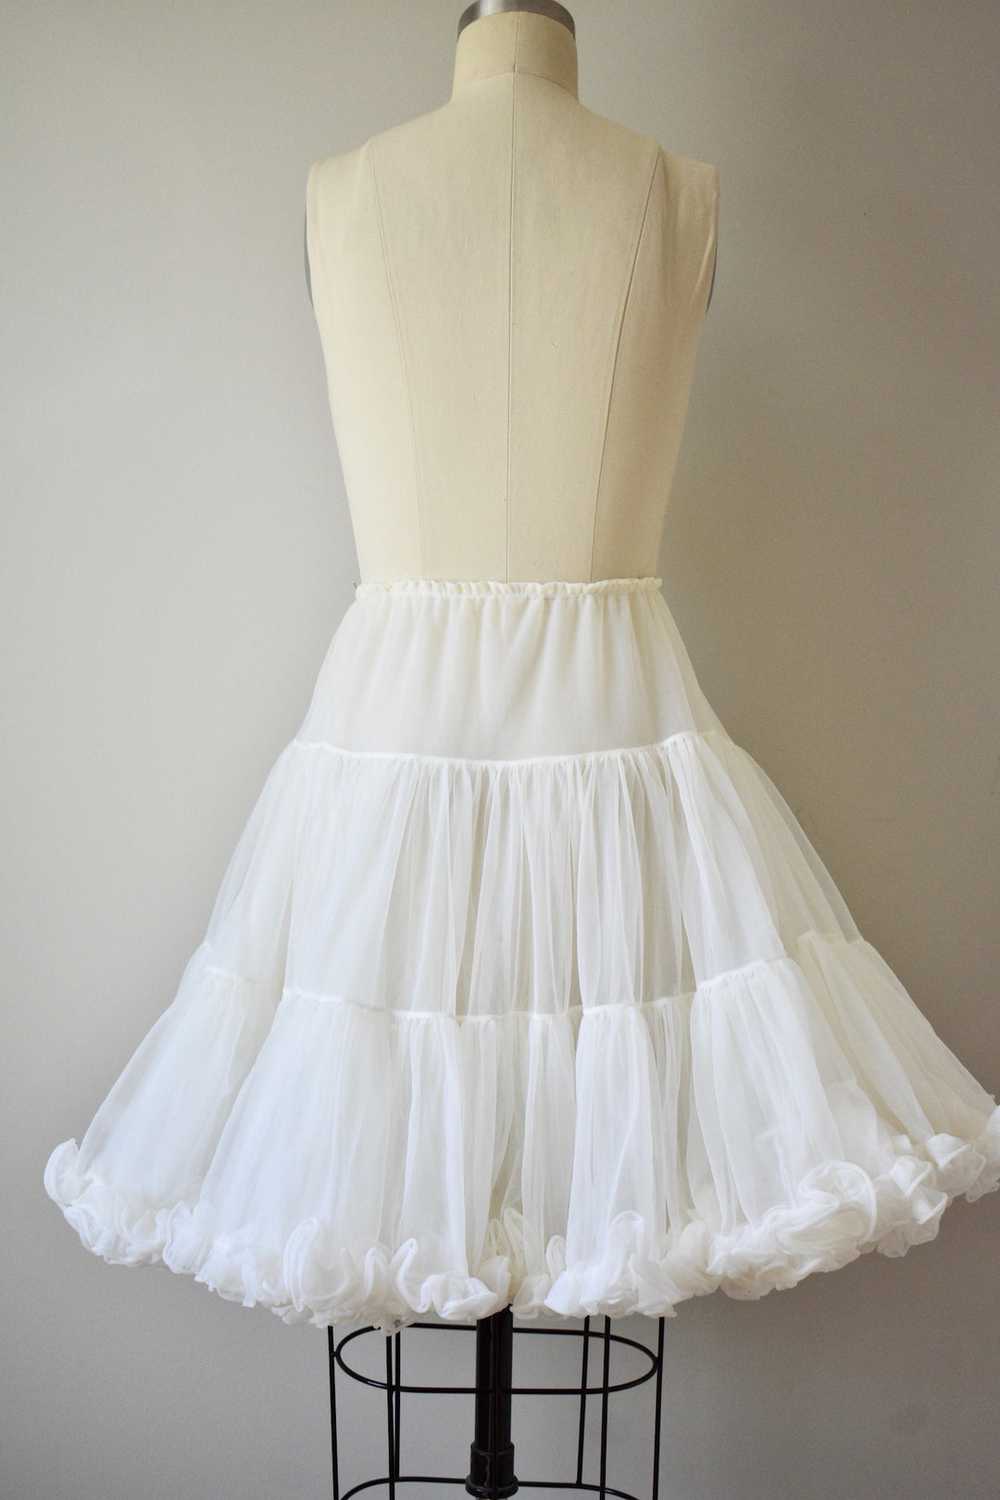 1950s White Underskirt - image 3